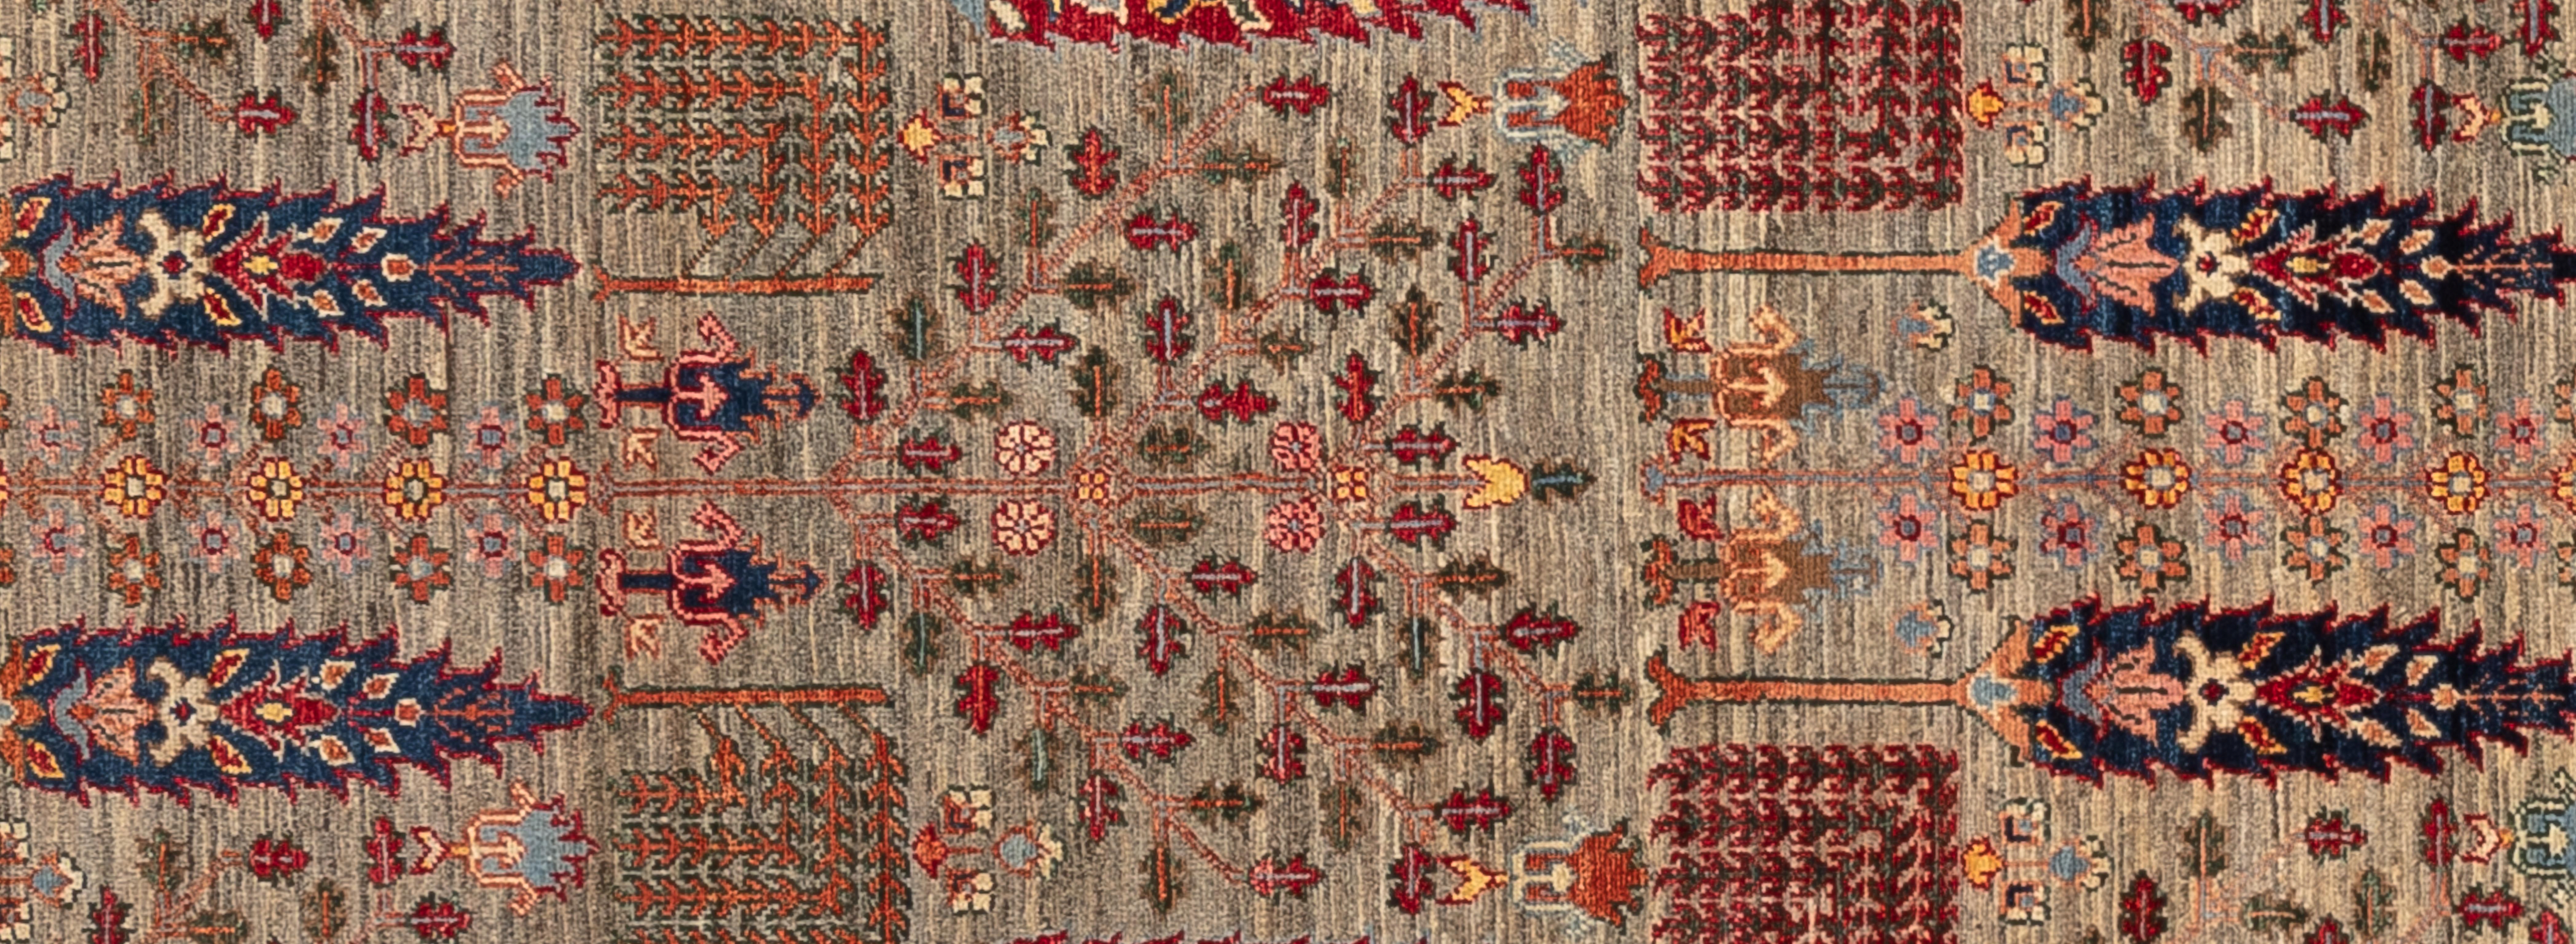 Ce tapis tribal aux tons sourds est orné de détails étonnants mais modestes. Magnifiquement tissé à la main au Pakistan, il est composé à 100 % de laine filée à la main.

Taille - 3'5